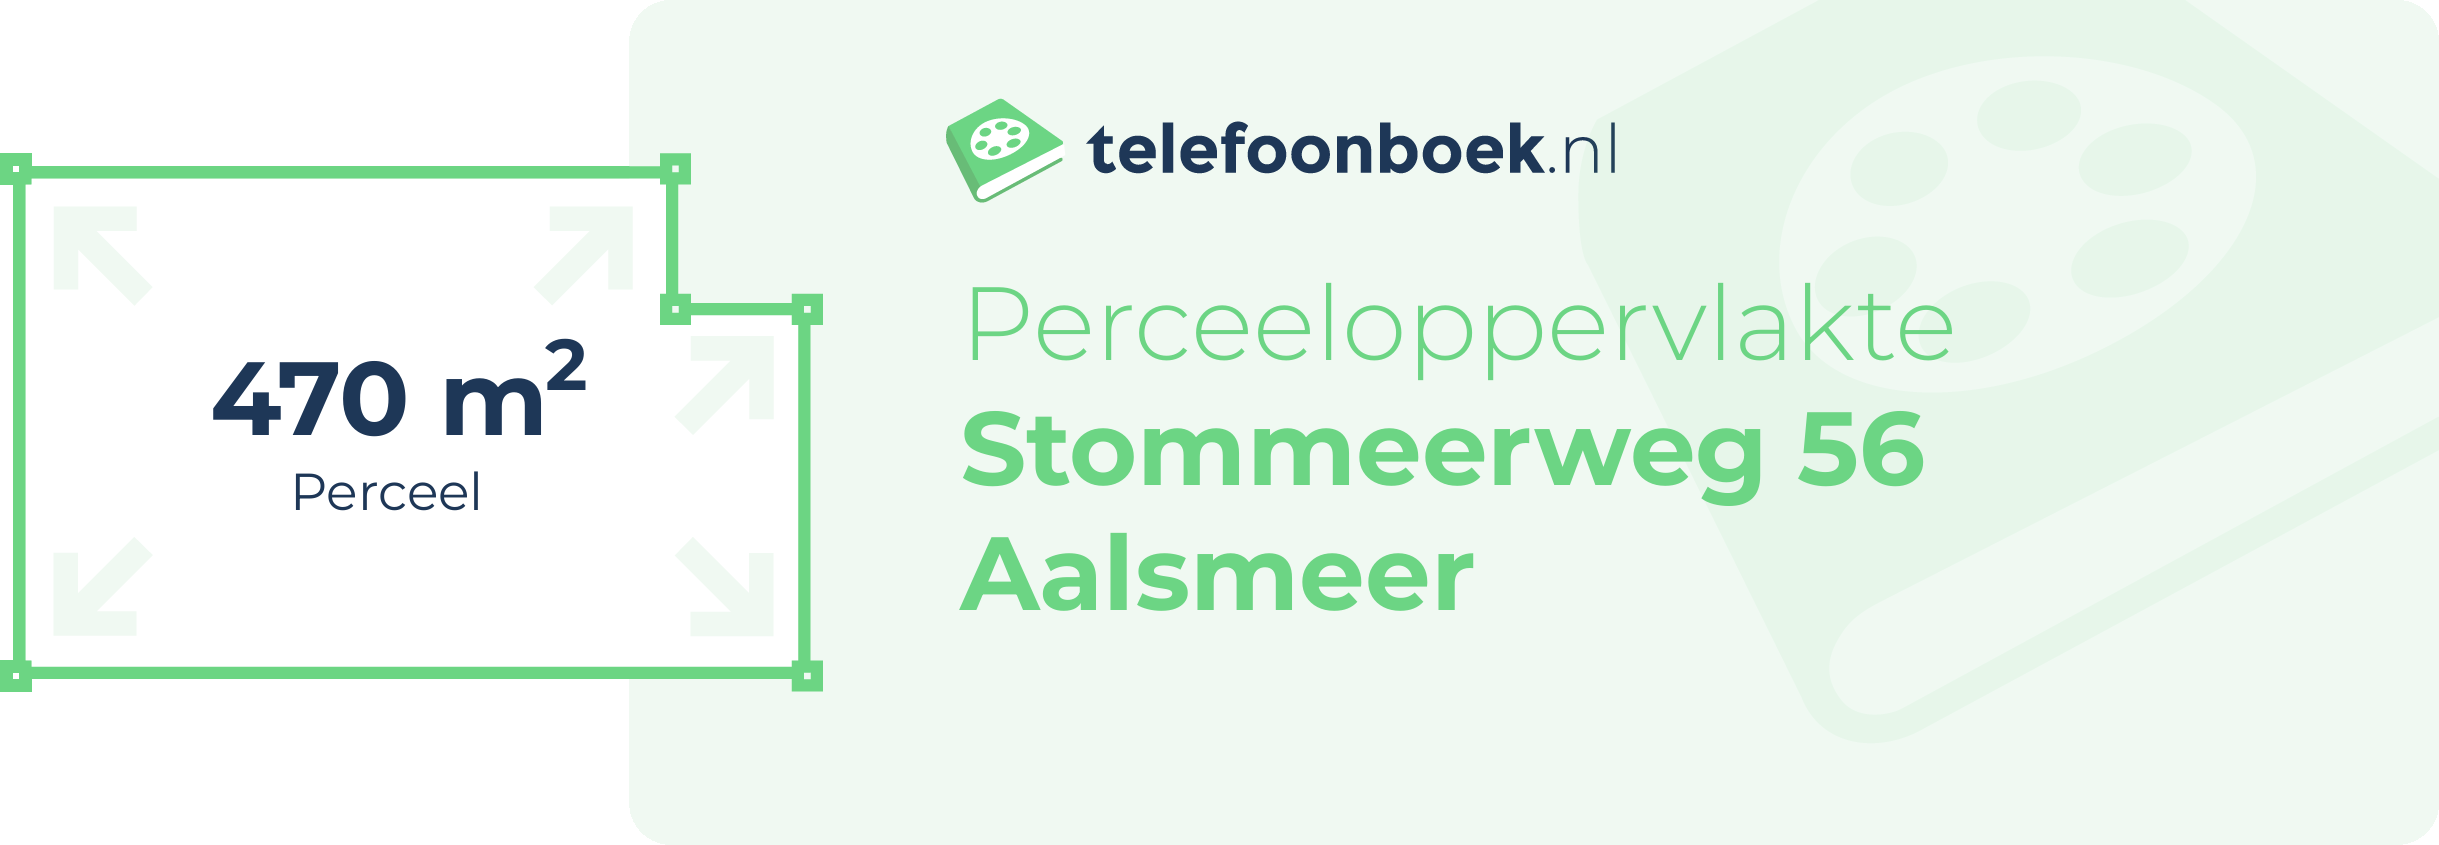 Perceeloppervlakte Stommeerweg 56 Aalsmeer